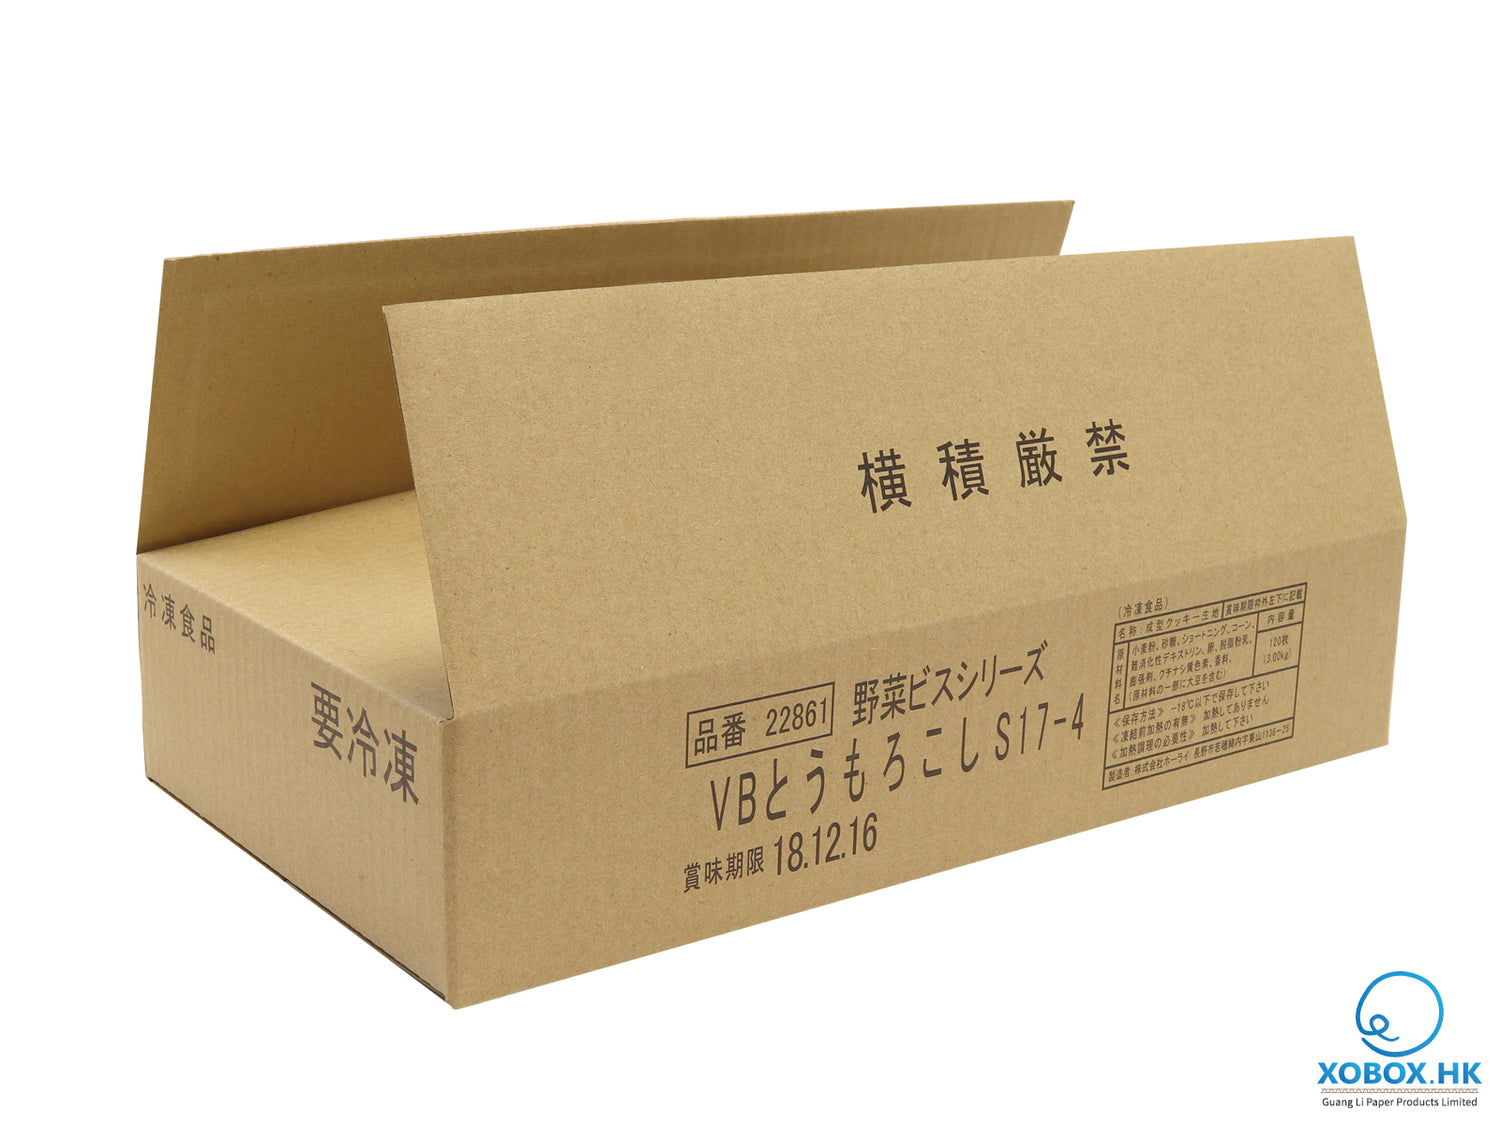 24811-14292 FrozenBox 野菜冷凍食品盒